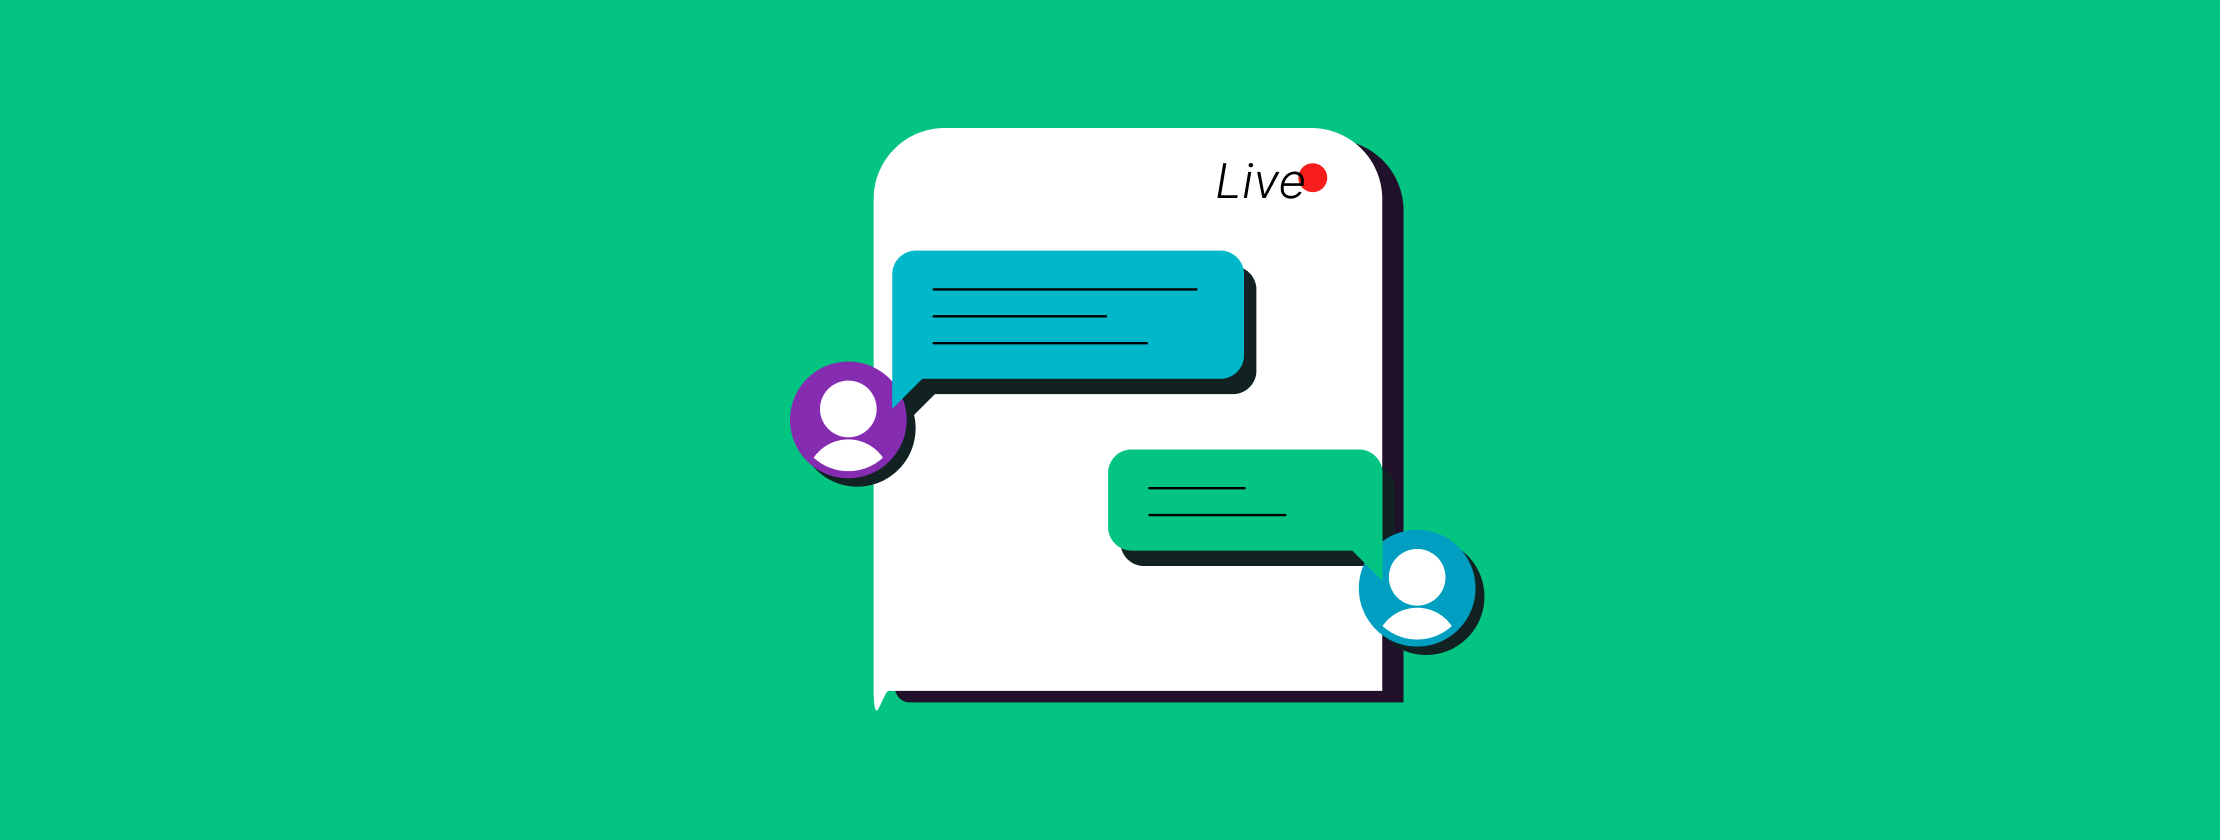 Cómo Atender a un Cliente: Errores a evitar en el chat en vivo